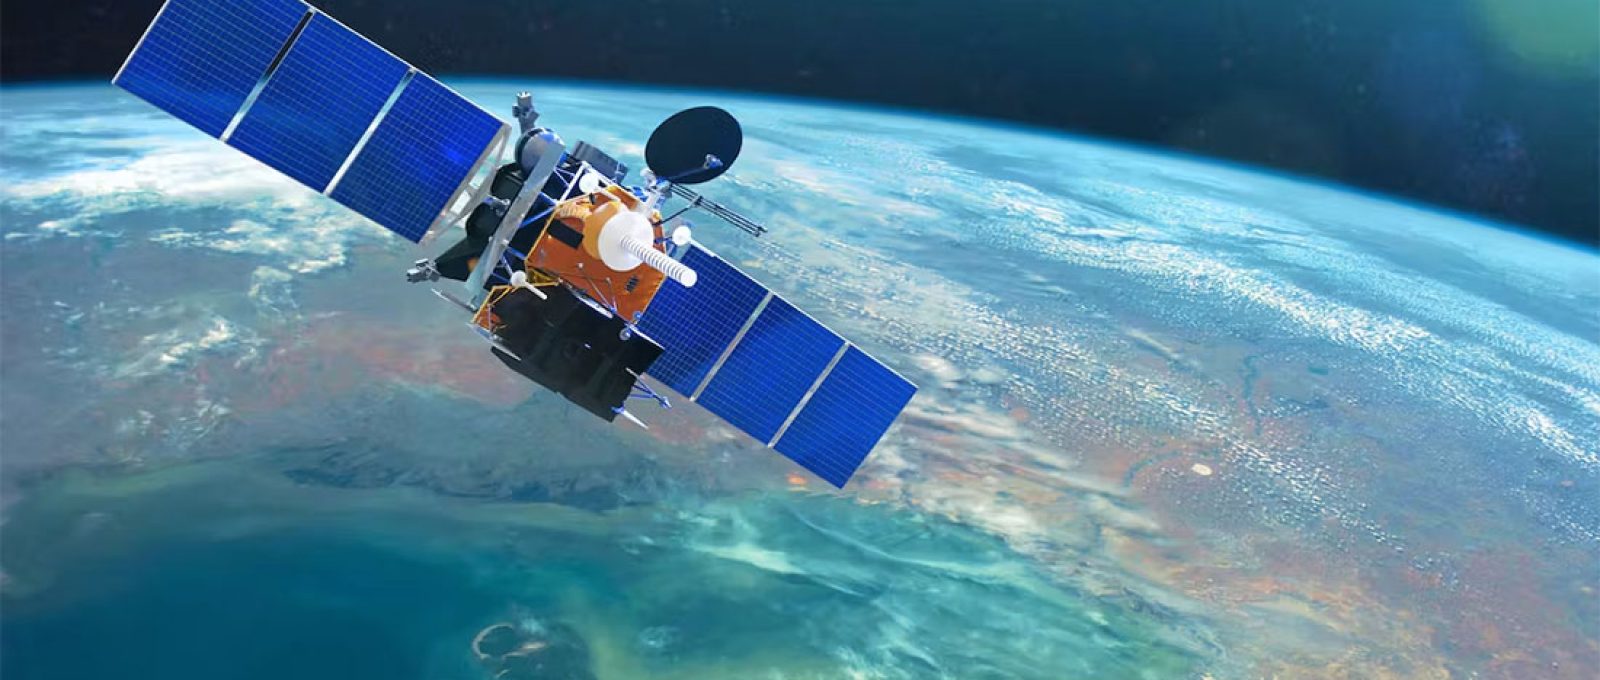 Satélite de comunicações espaciais em órbita baixa ao redor da Terra (NASA via Shutterstock).